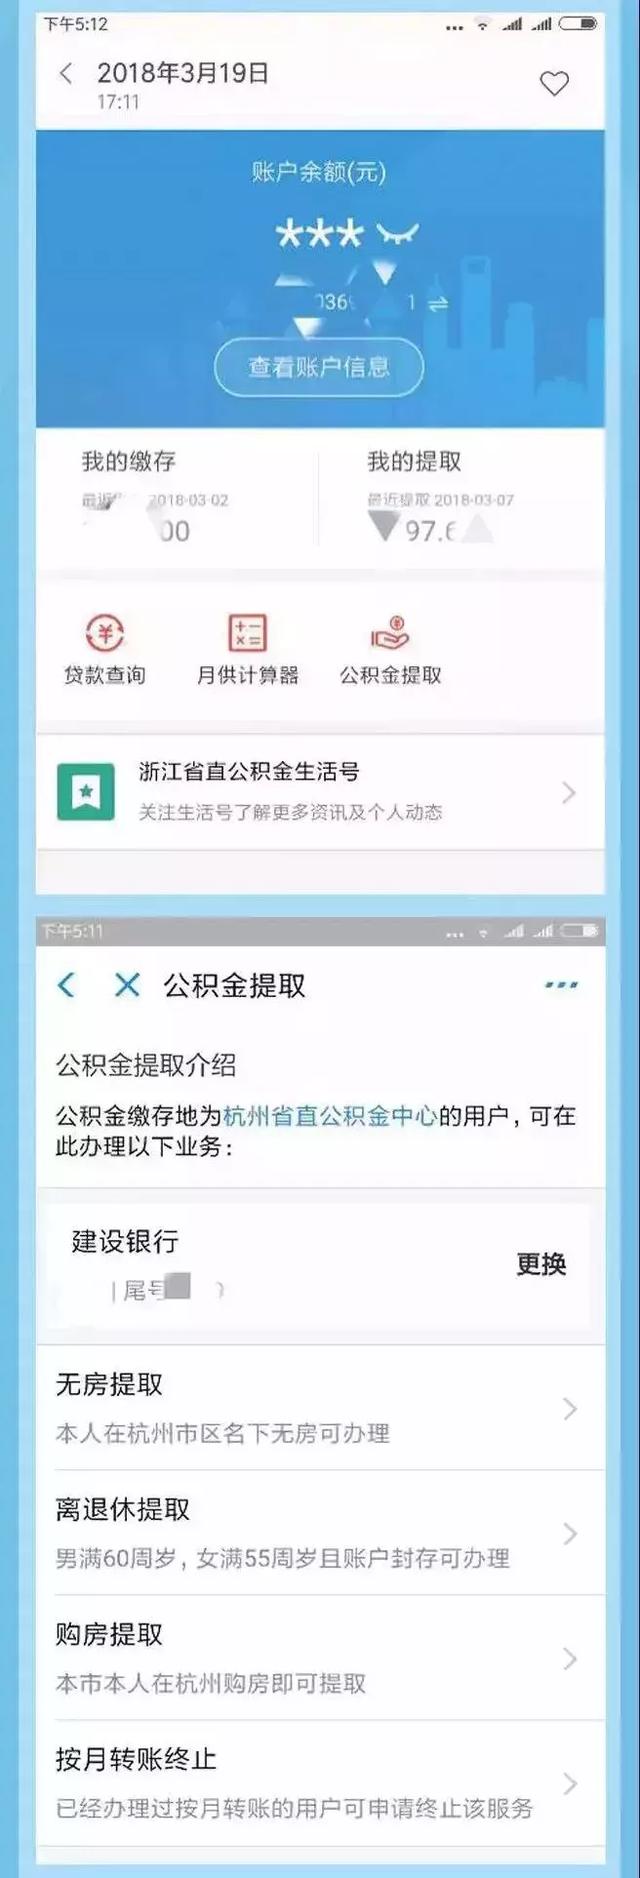 超方便 浙江省直公积金可在手机上直接提取 更多便民措施快来了解